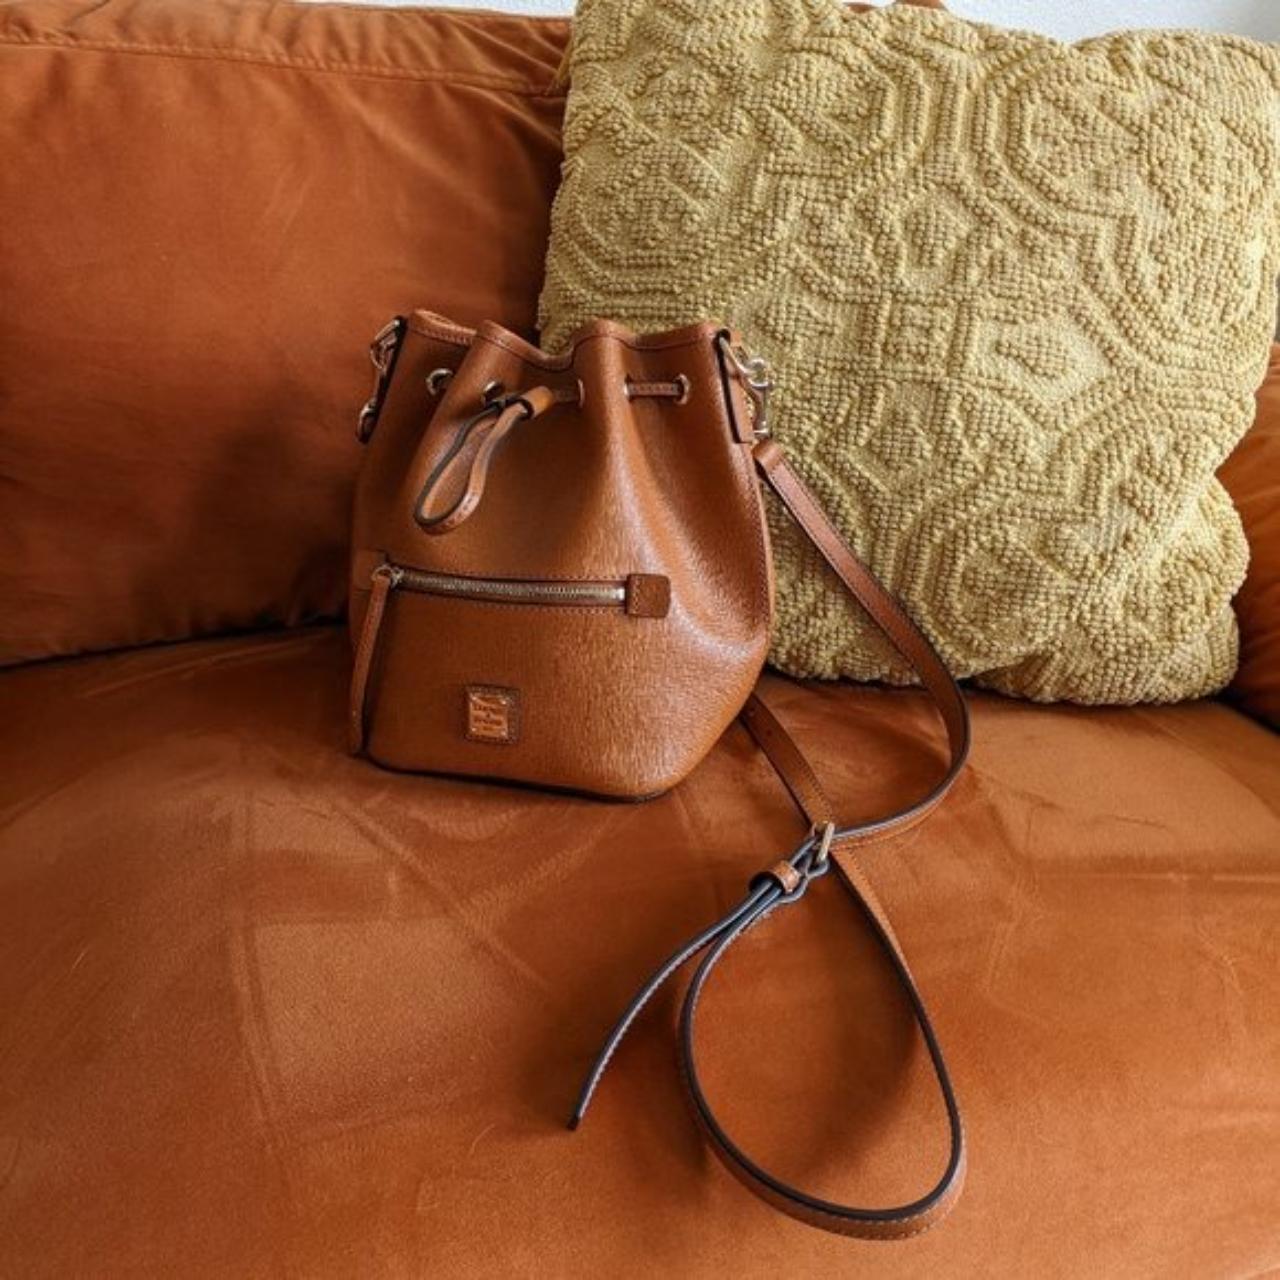 Dooney & Bourke Women's Leather Bag